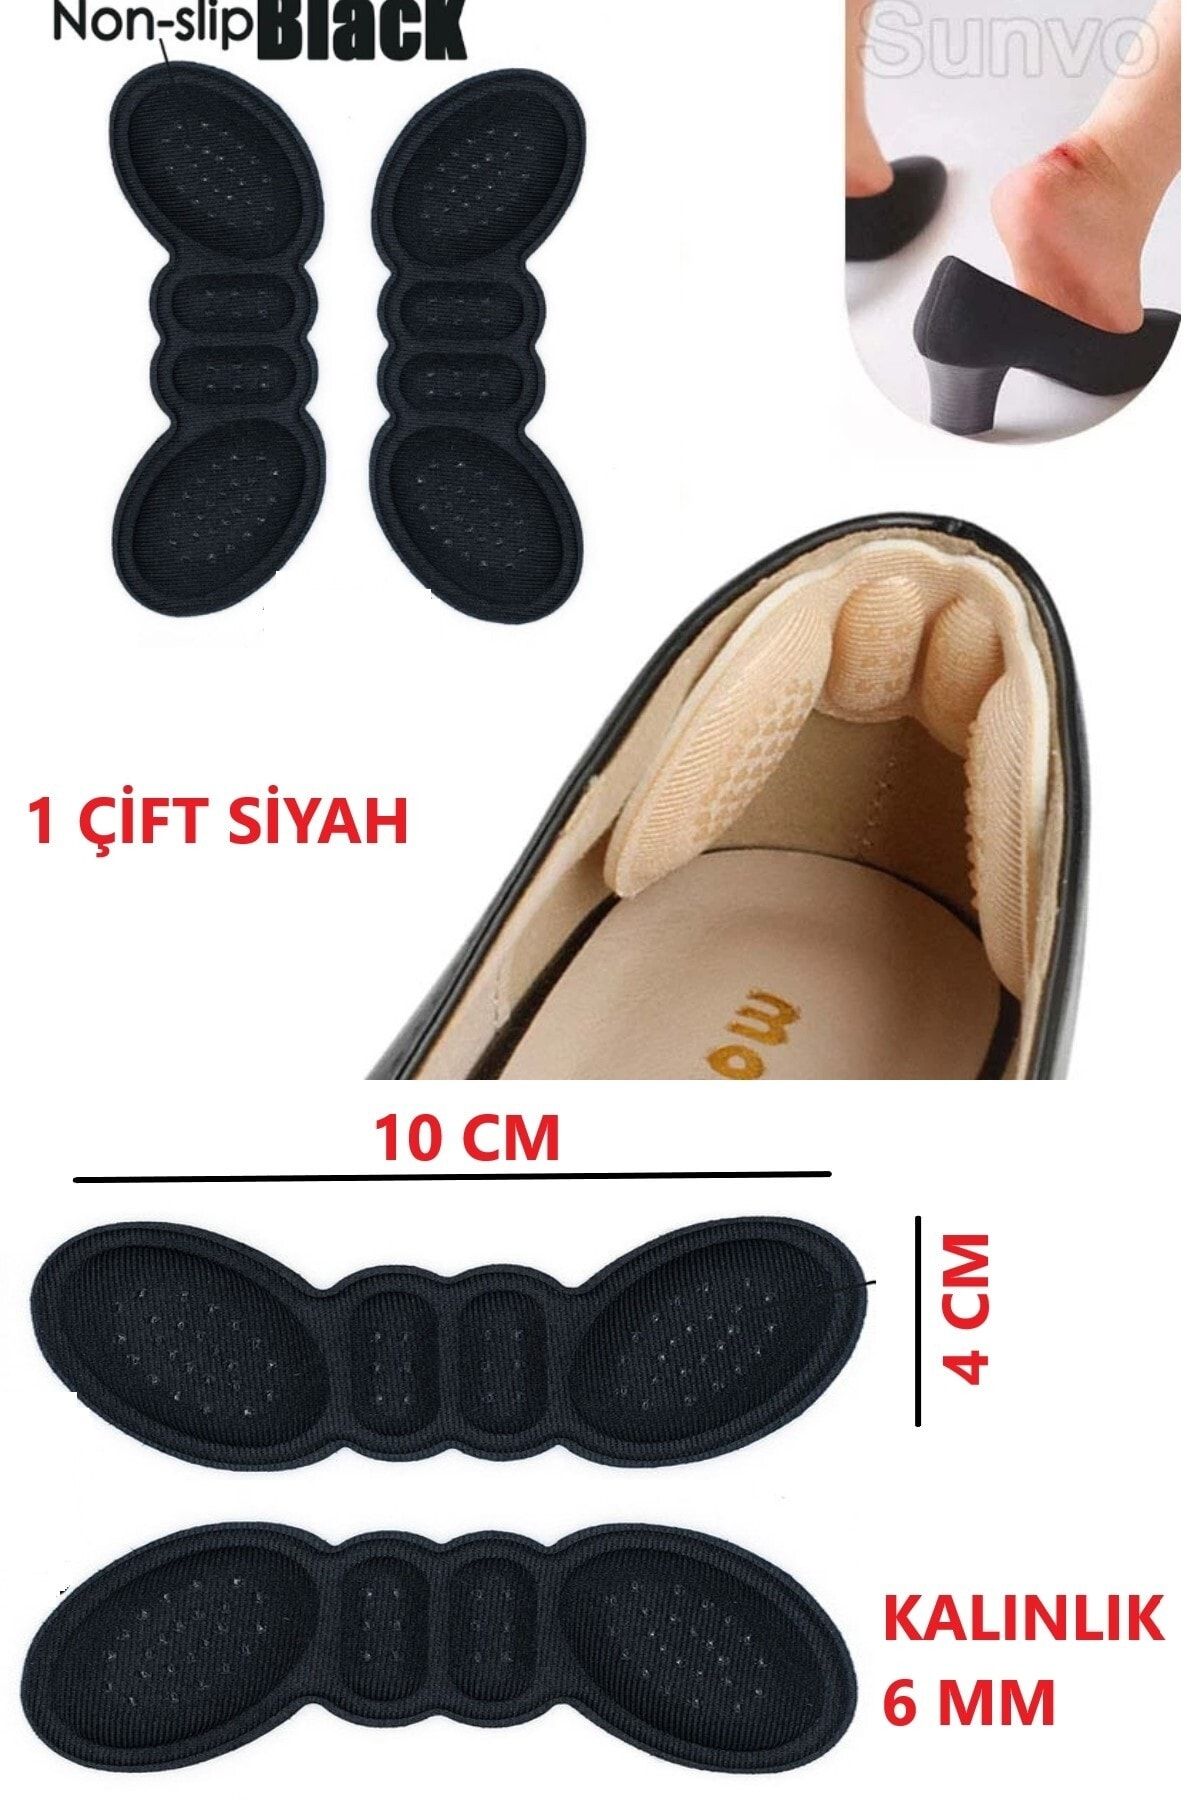 Bunyon Topuklu Ayakkabı Daraltan Ped Ayak Topuk Vurma Önleyici Sünger Bant Topuk Ağrısı Topuk Koruyucu 6 Mm